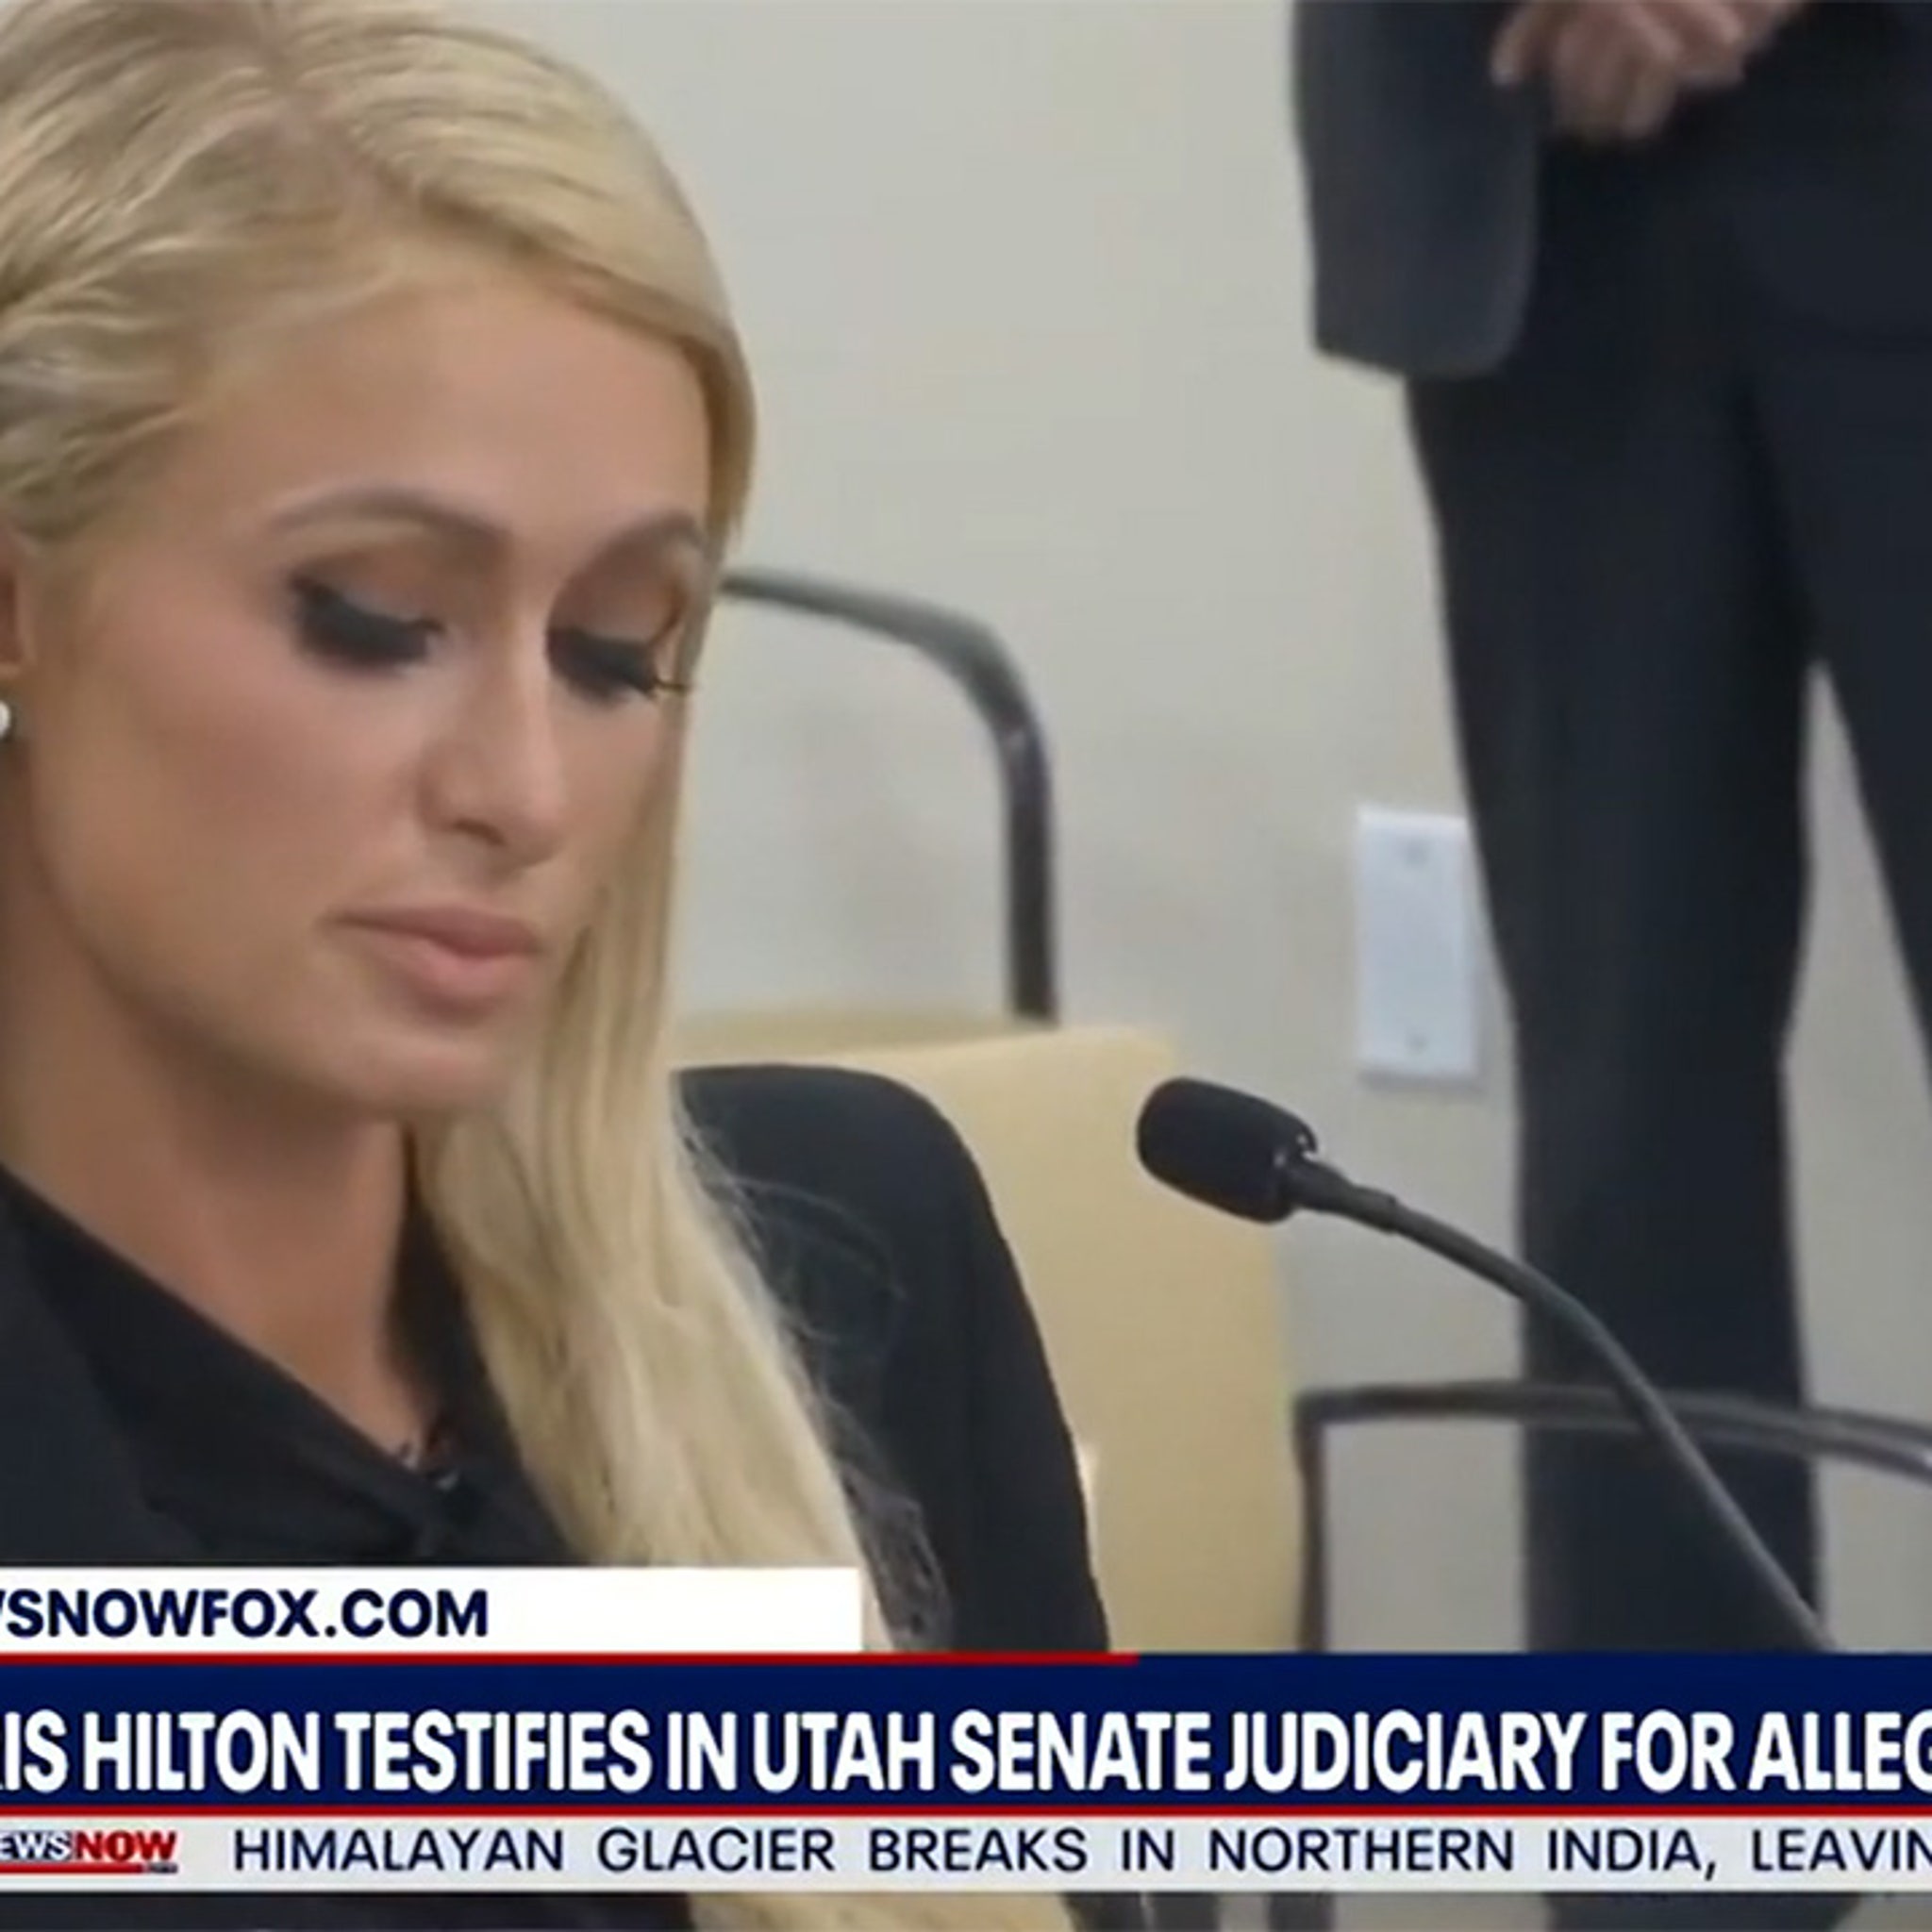 Paris Hilton Proud After Bill She Testified for Passes in Utah Senate